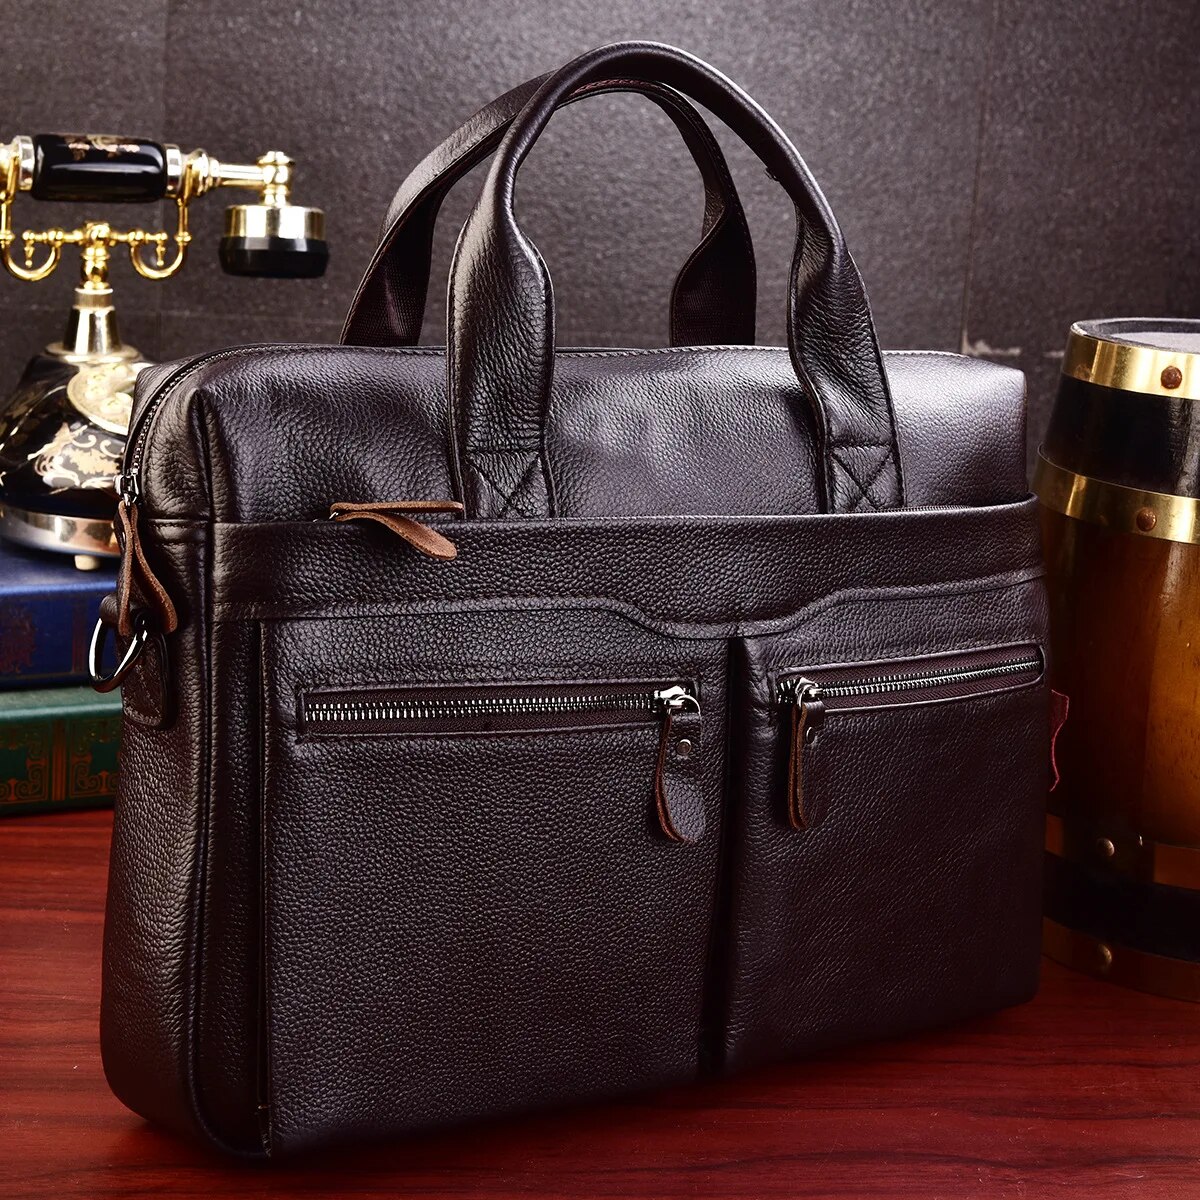 come4buy.com-Business Briefcases Männer Kuederleder Fit 14'' Laptop Bag